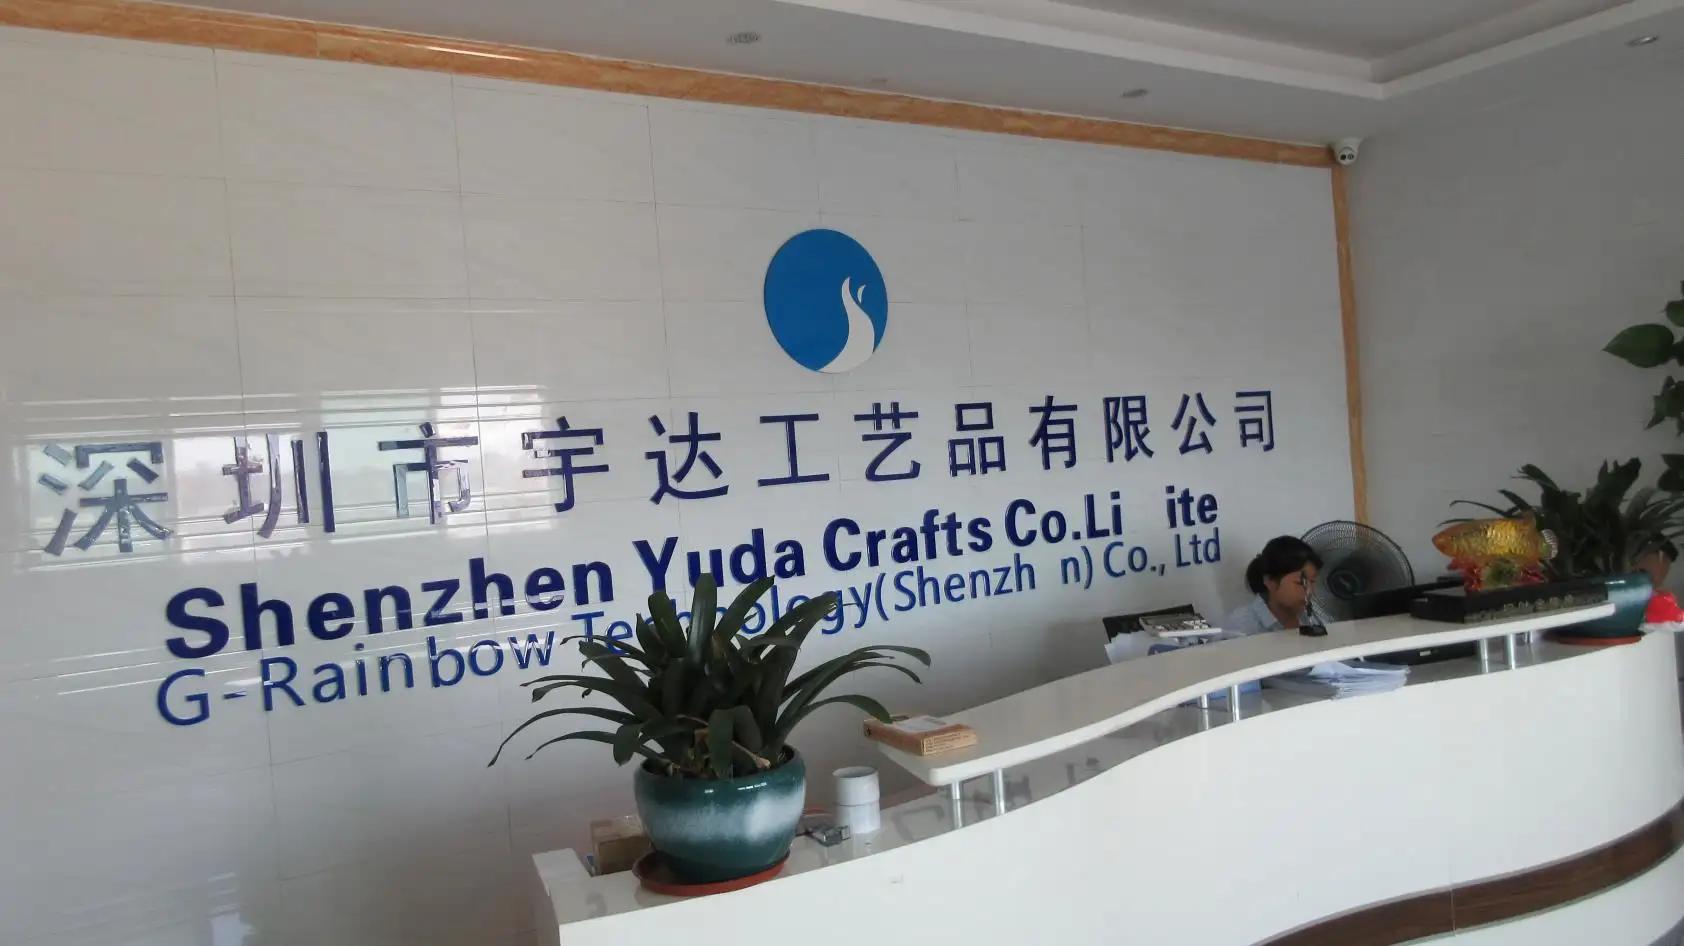 Shenzhen Yuda Crafts Co., Ltd.